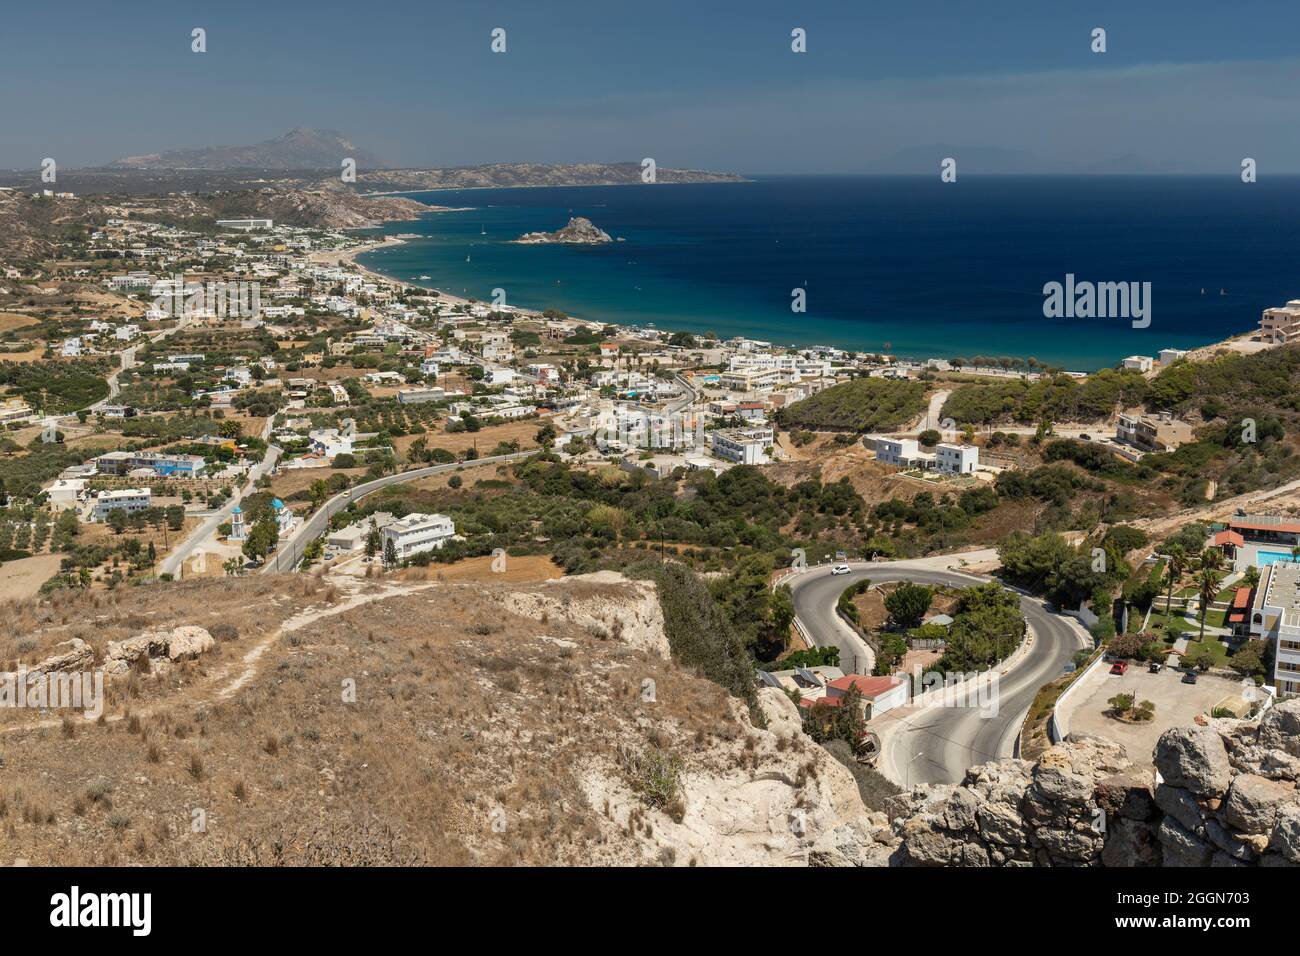 Vista panorámica de la bahía de Kamari desde el Castillo de Kefalos, Kefalos, Kos, Islas Dodecanesas, Grecia Foto de stock